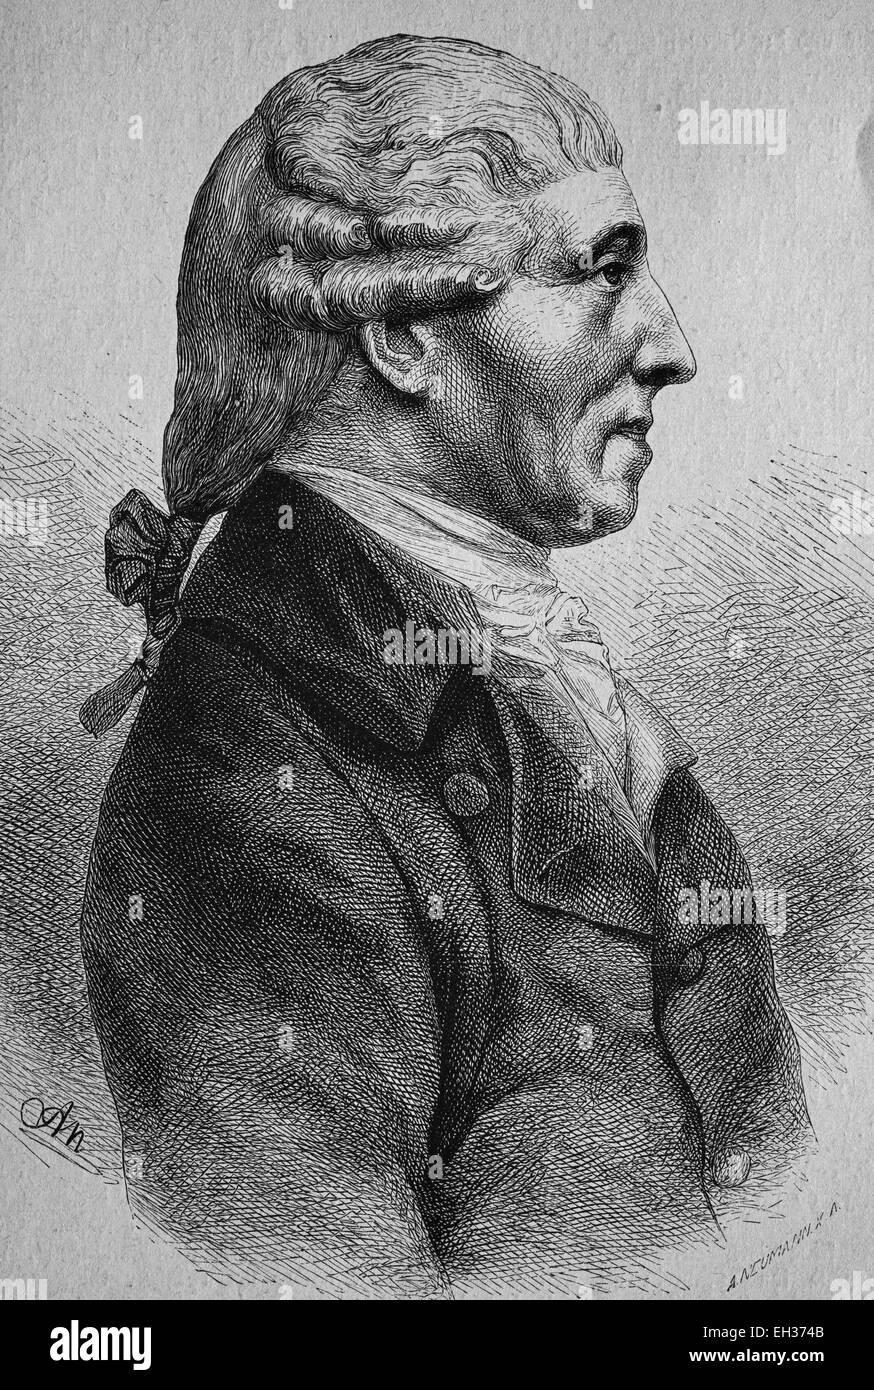 Franz Joseph Haydn, 1732 - 1809, il compositore austriaco e il rappresentante principale del classicismo viennese, incisione su legno, 1880 Foto Stock